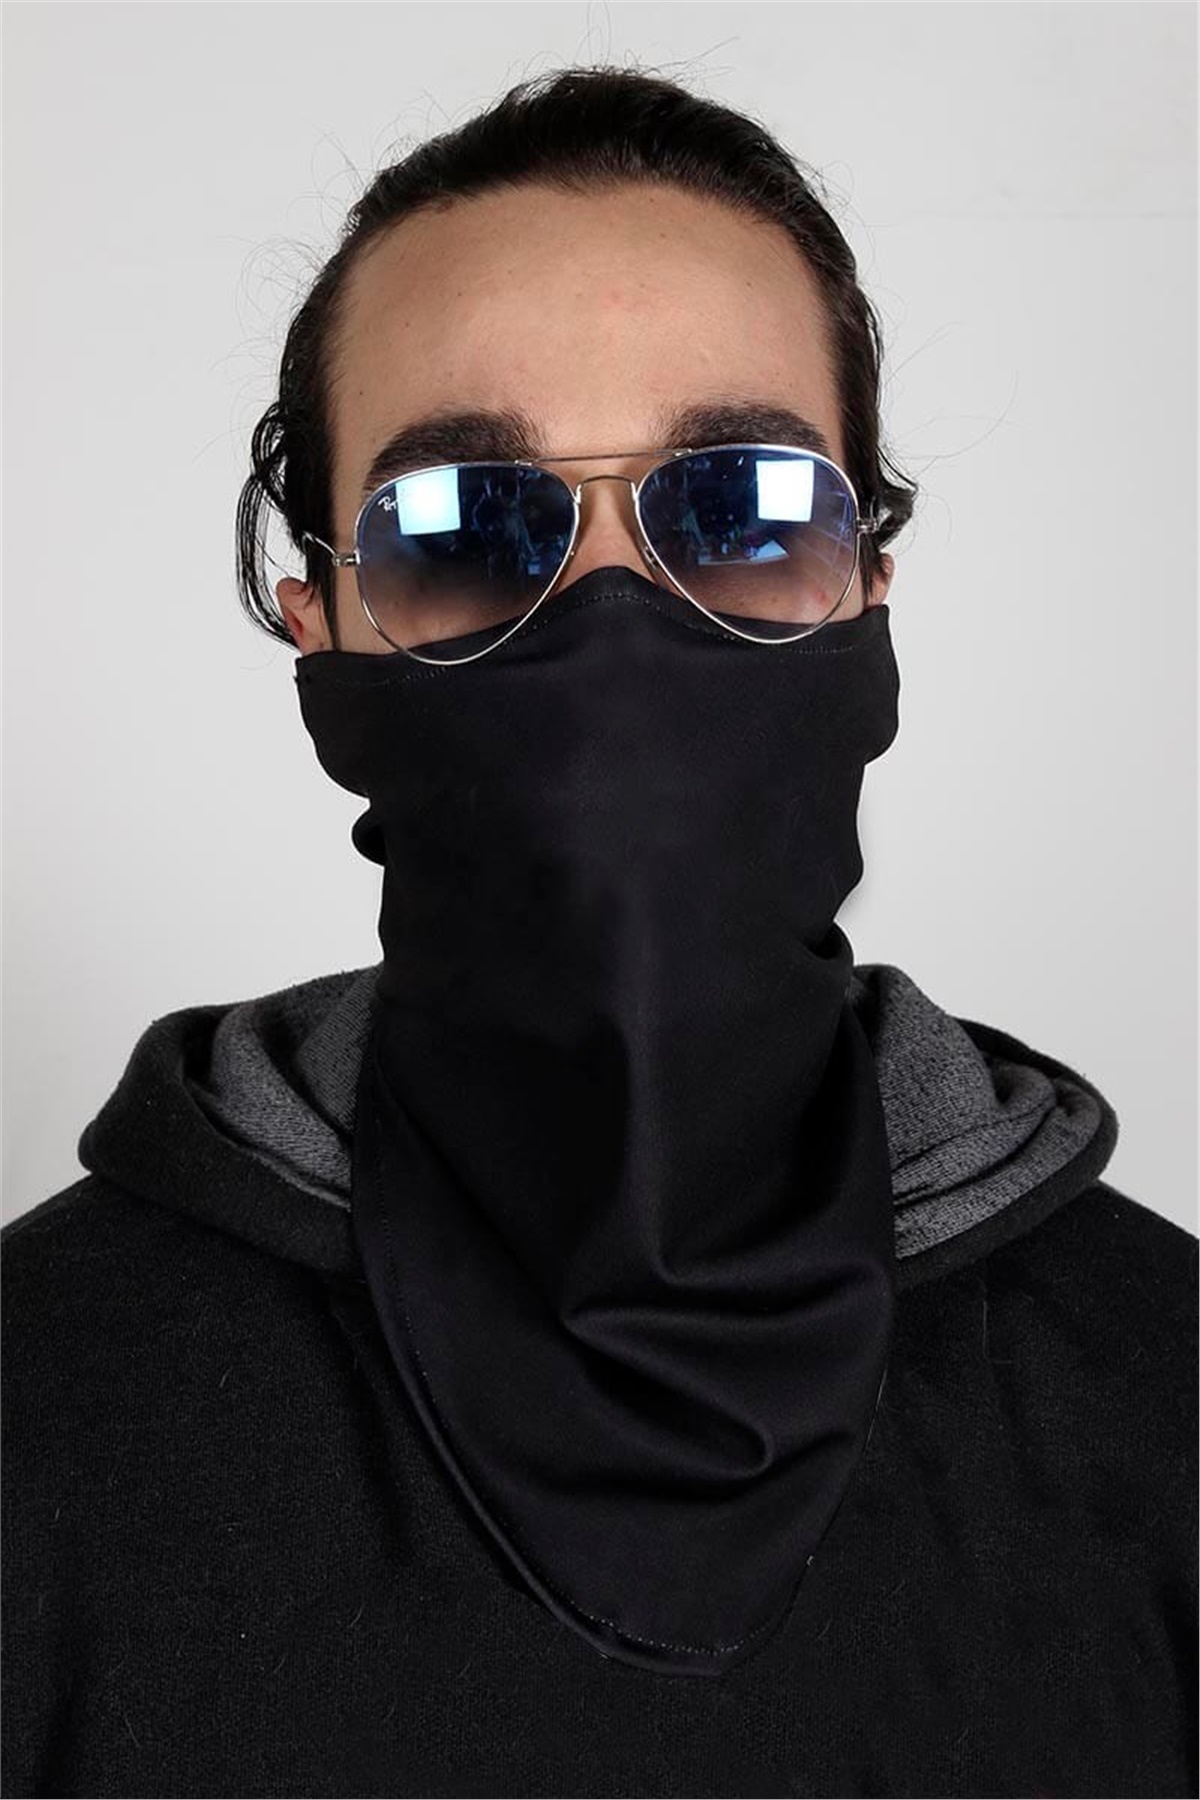 Defalarca Yıkanabilir Siyah Yüz Maskesi / Unisex  C5051